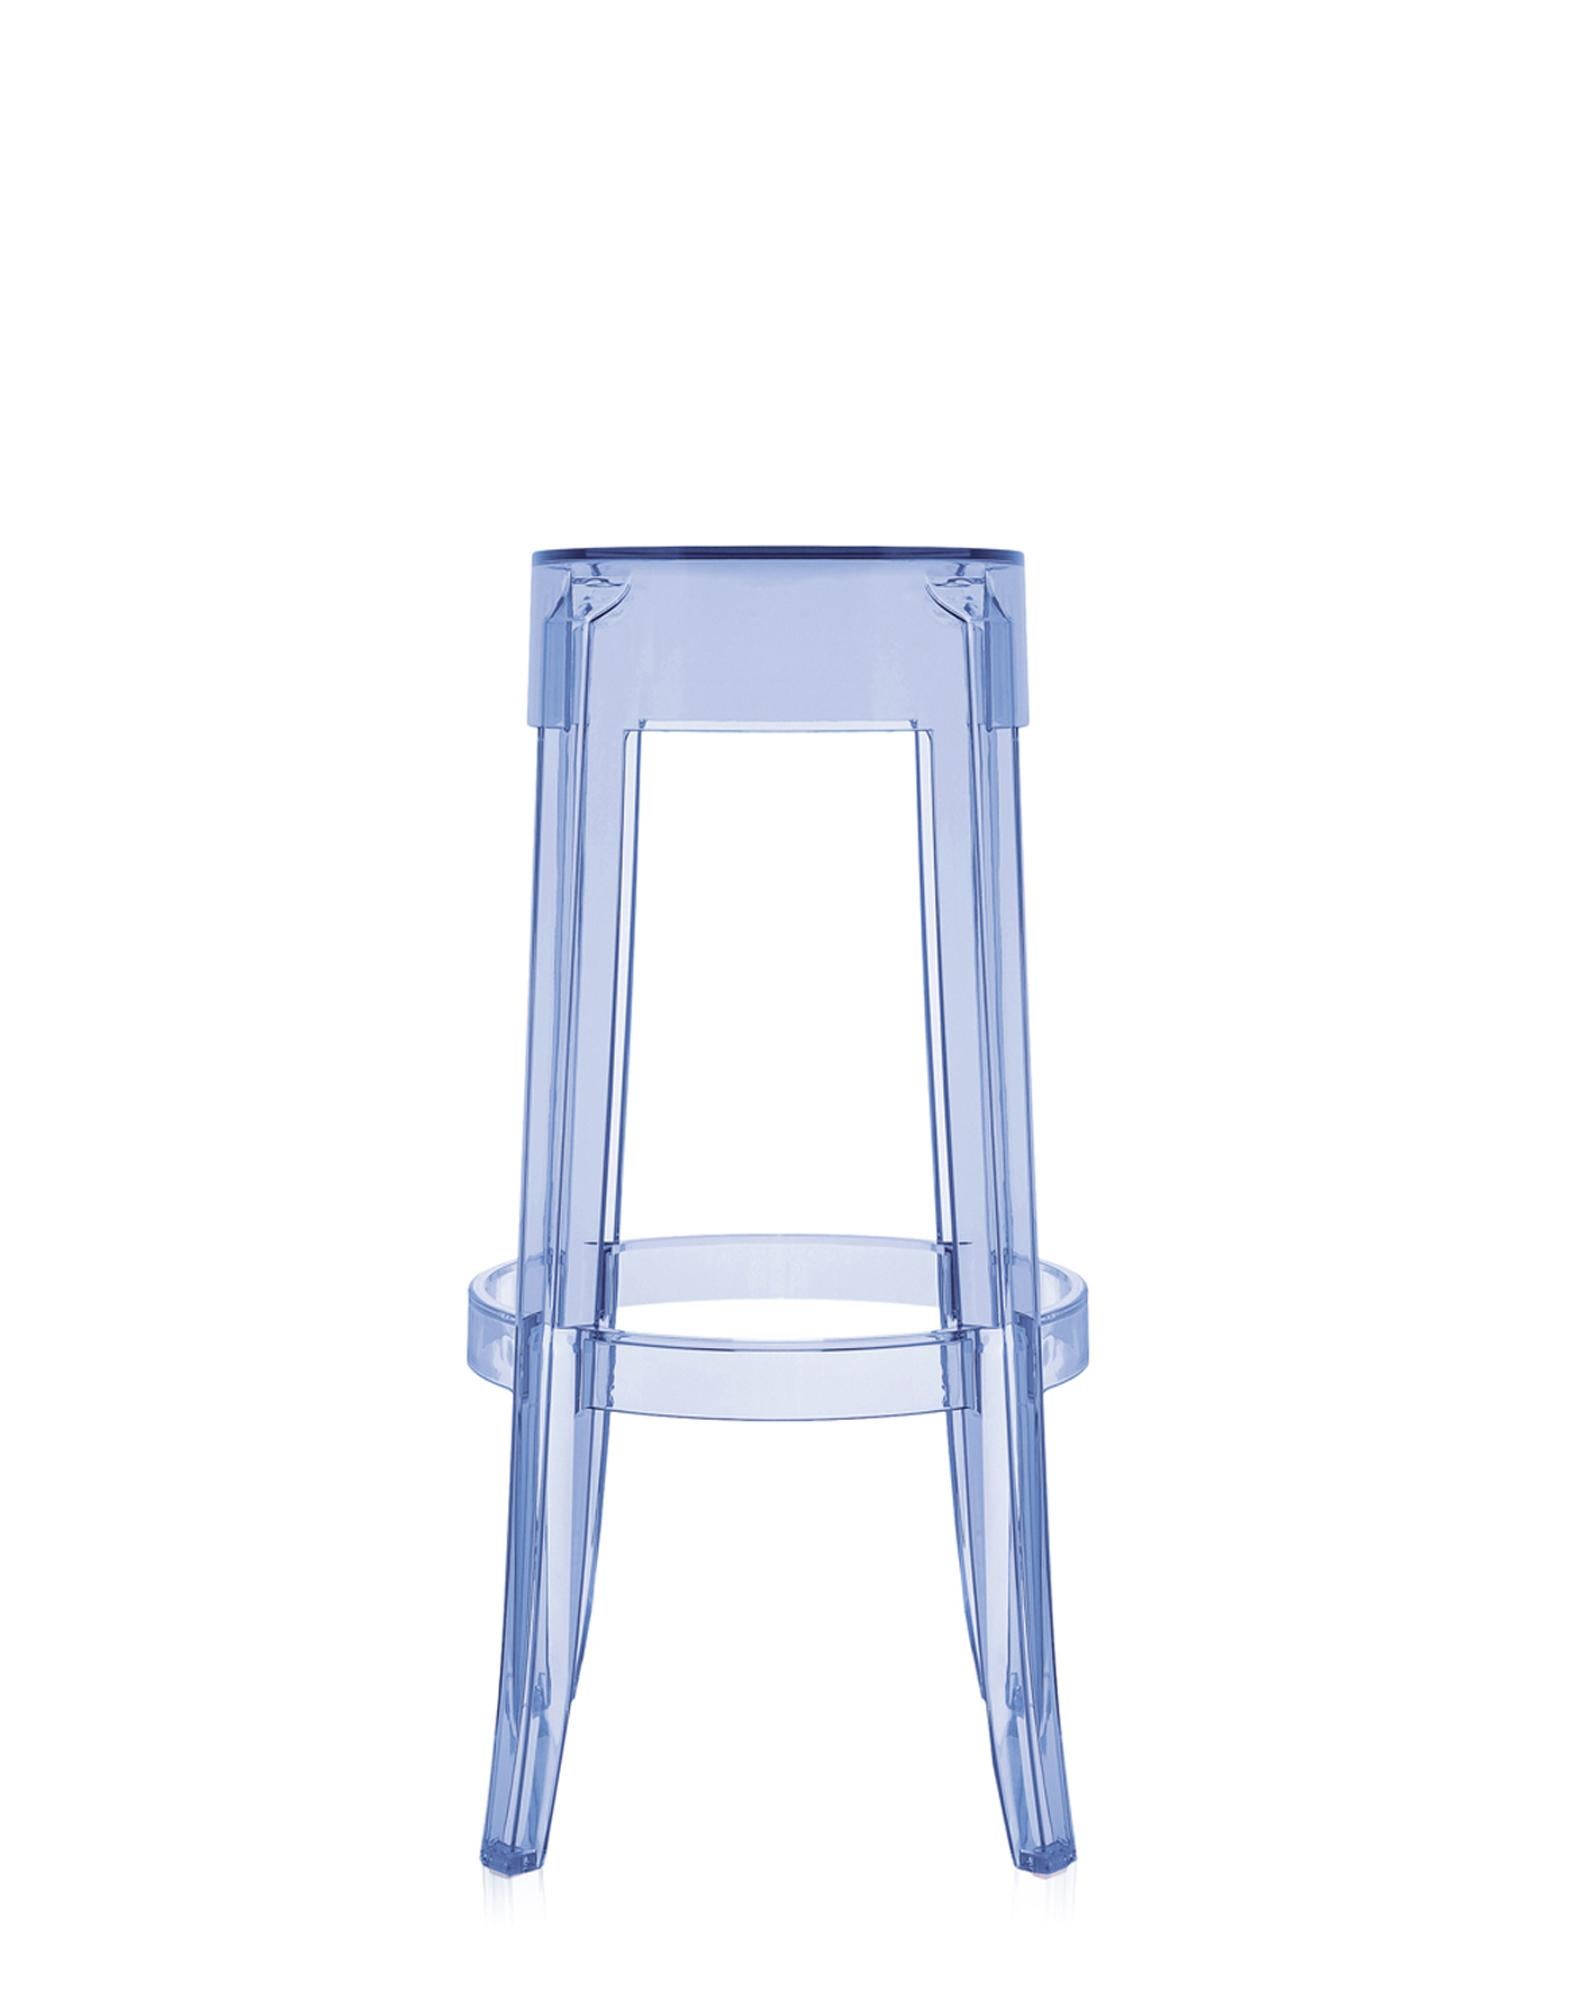 acrylic bar stools ikea